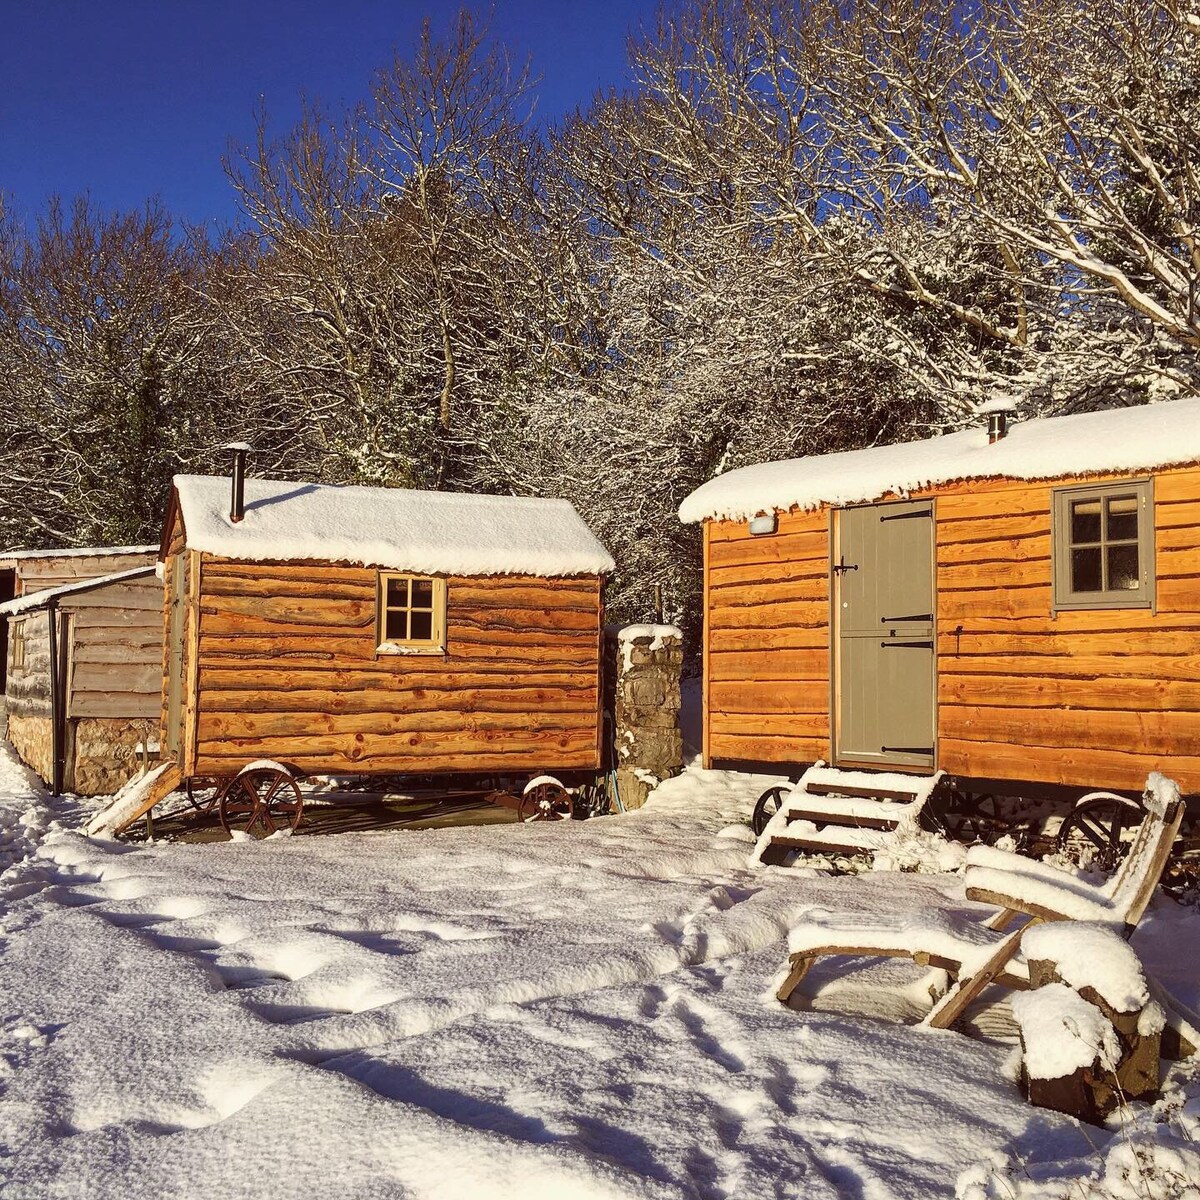 可欣赏雪地美景的豪华小木屋